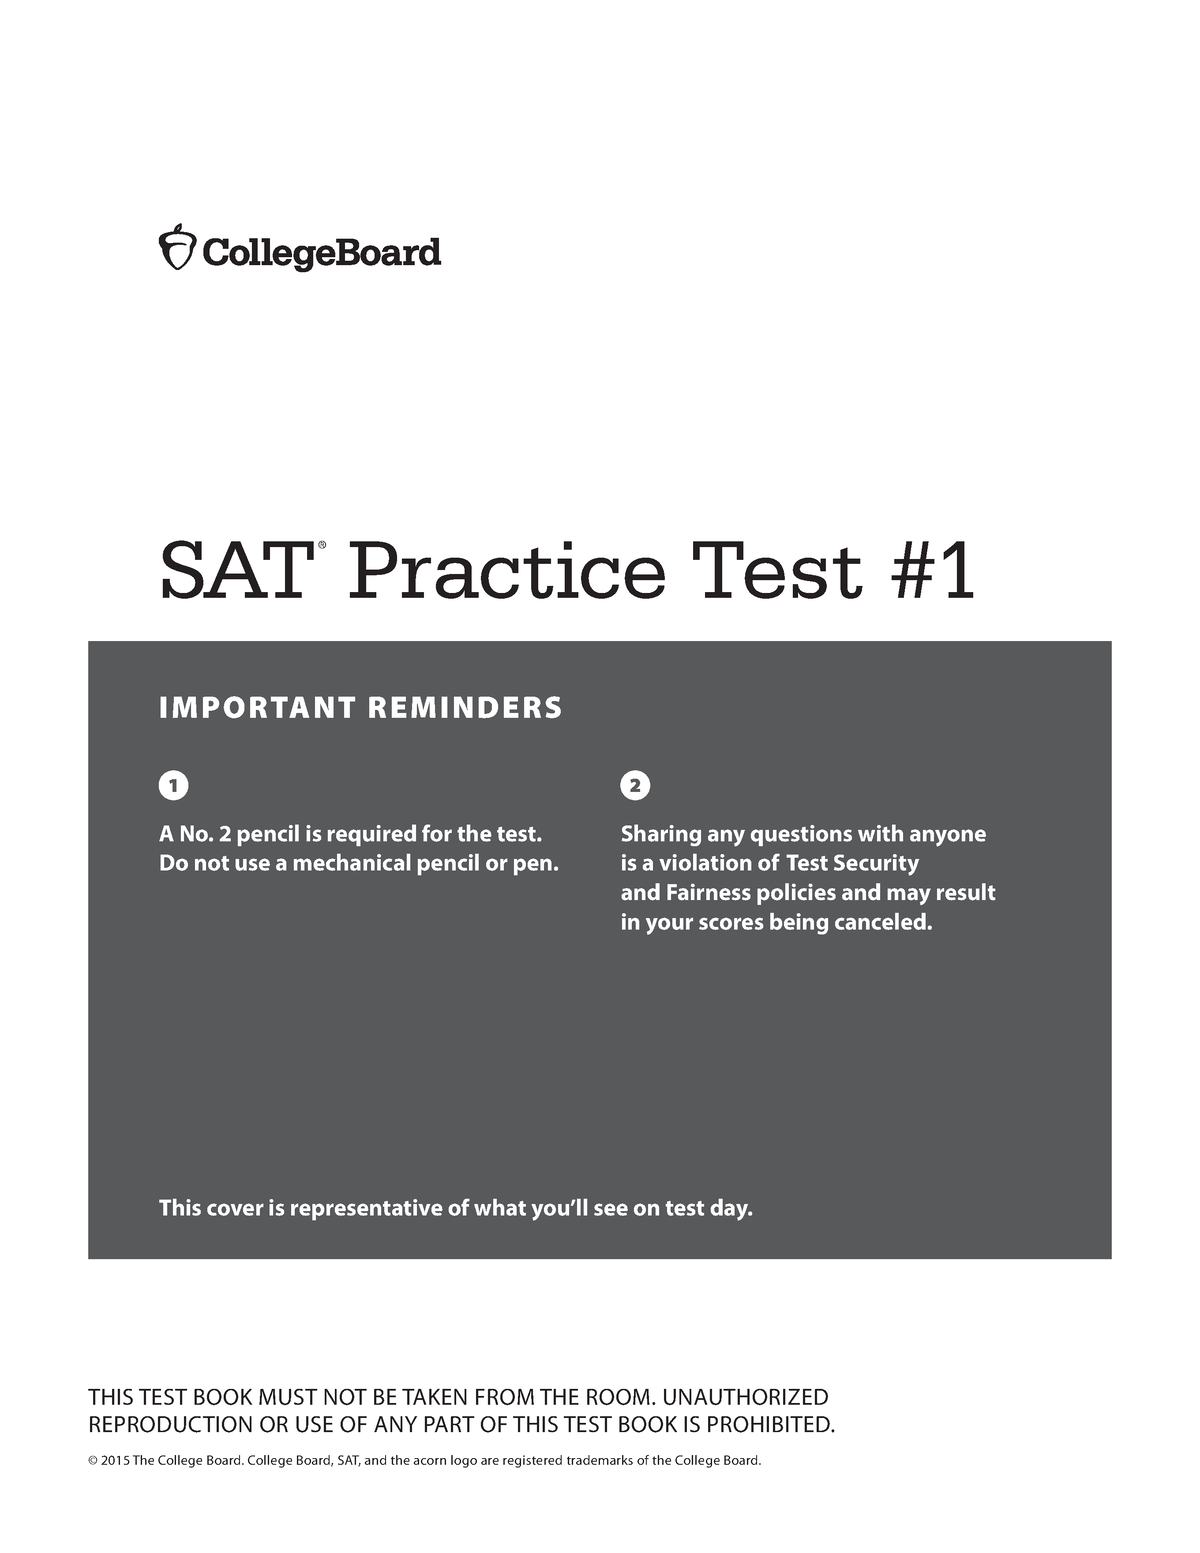 prep-scholar-sat-practice-test-1-important-reminders-sat-practice-test-a-no-2-pencil-is